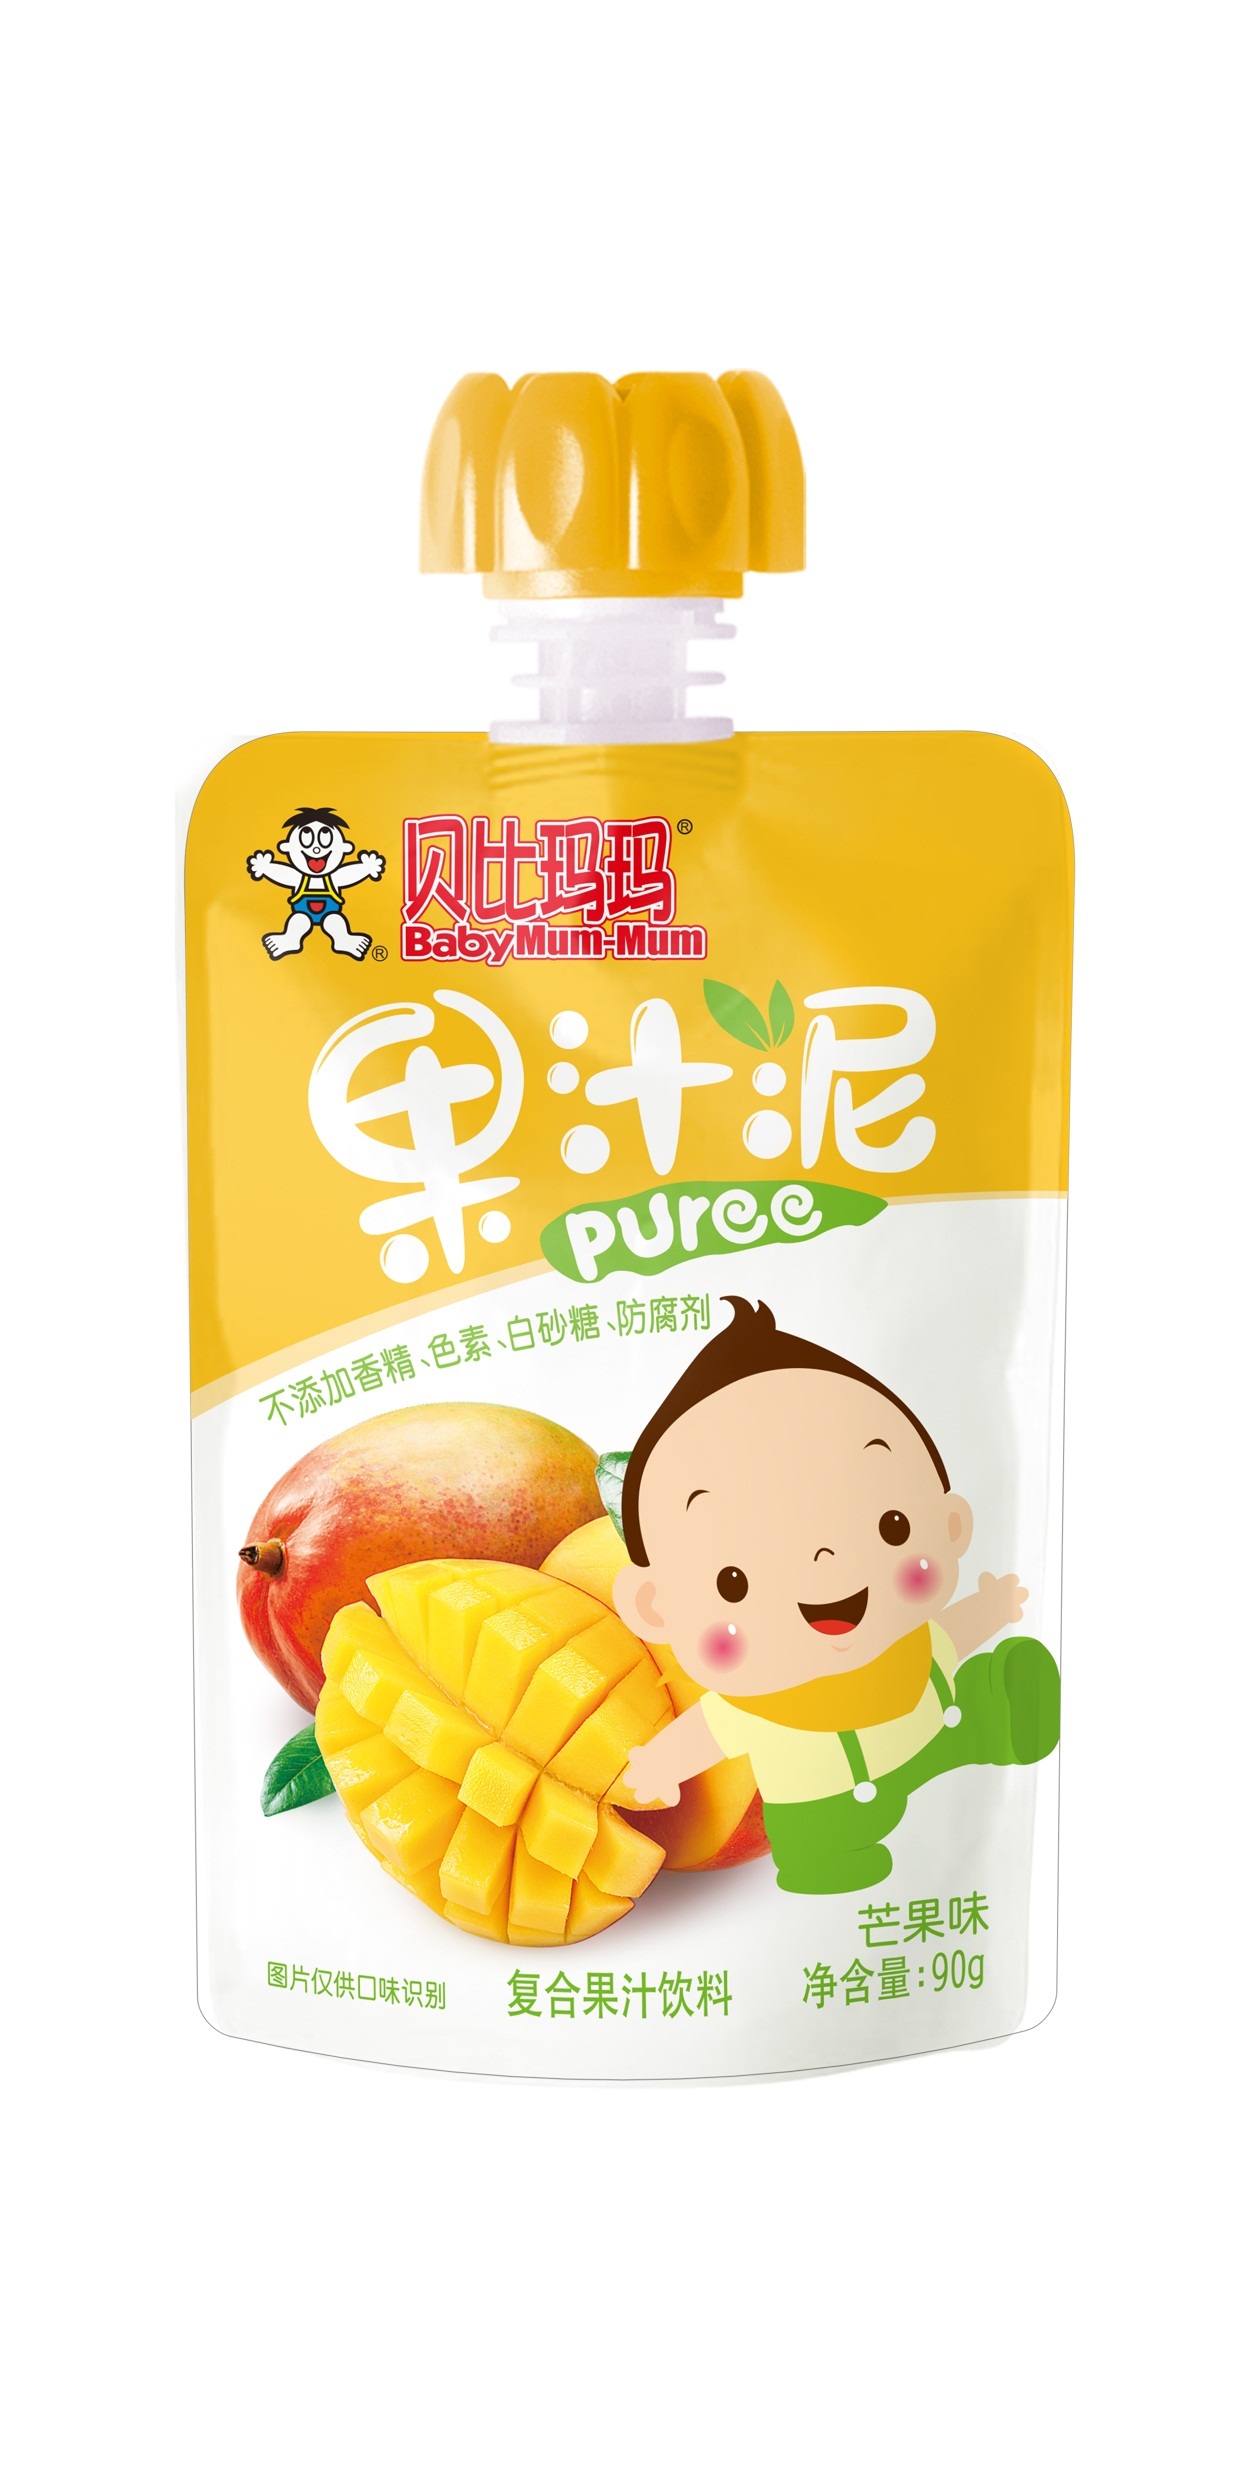 旺旺贝比玛玛果泥吸吸袋儿童零食水果泥芒果味90g/袋(效期至21年9月)